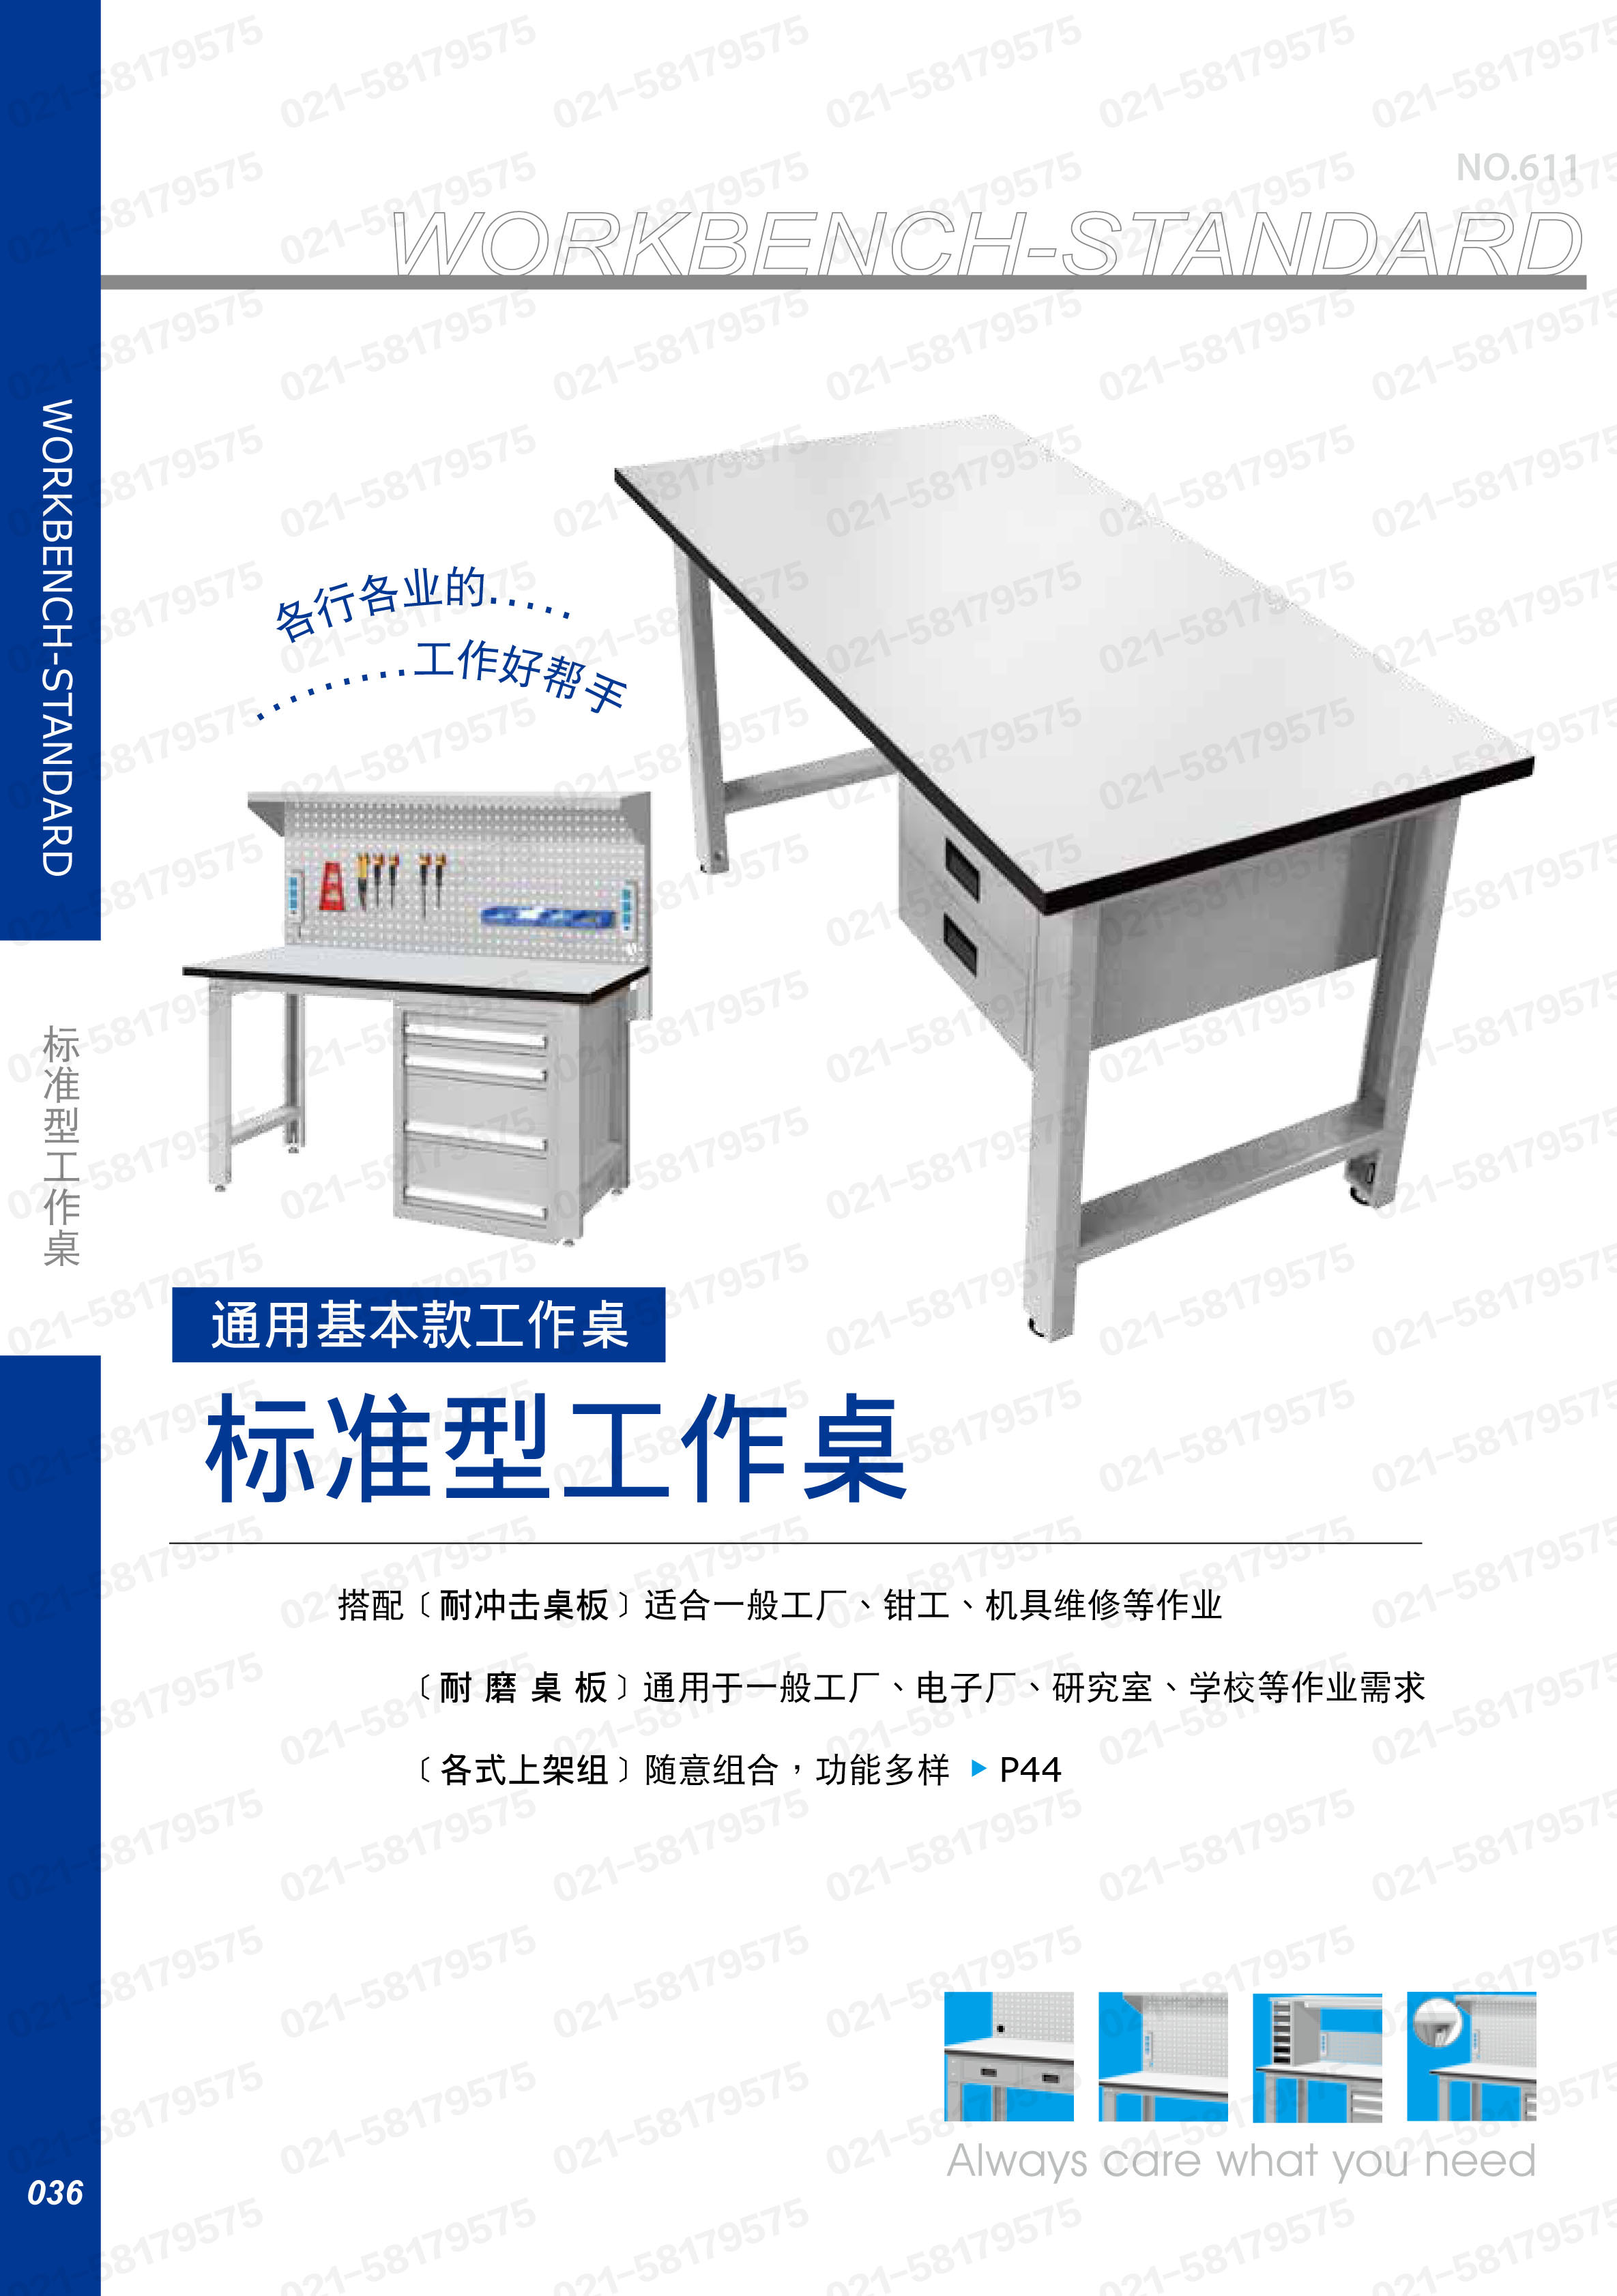 轻型工作桌1800×750×800mm 耐磨桌板 带四抽边柜,WBS-67041F,5D2949